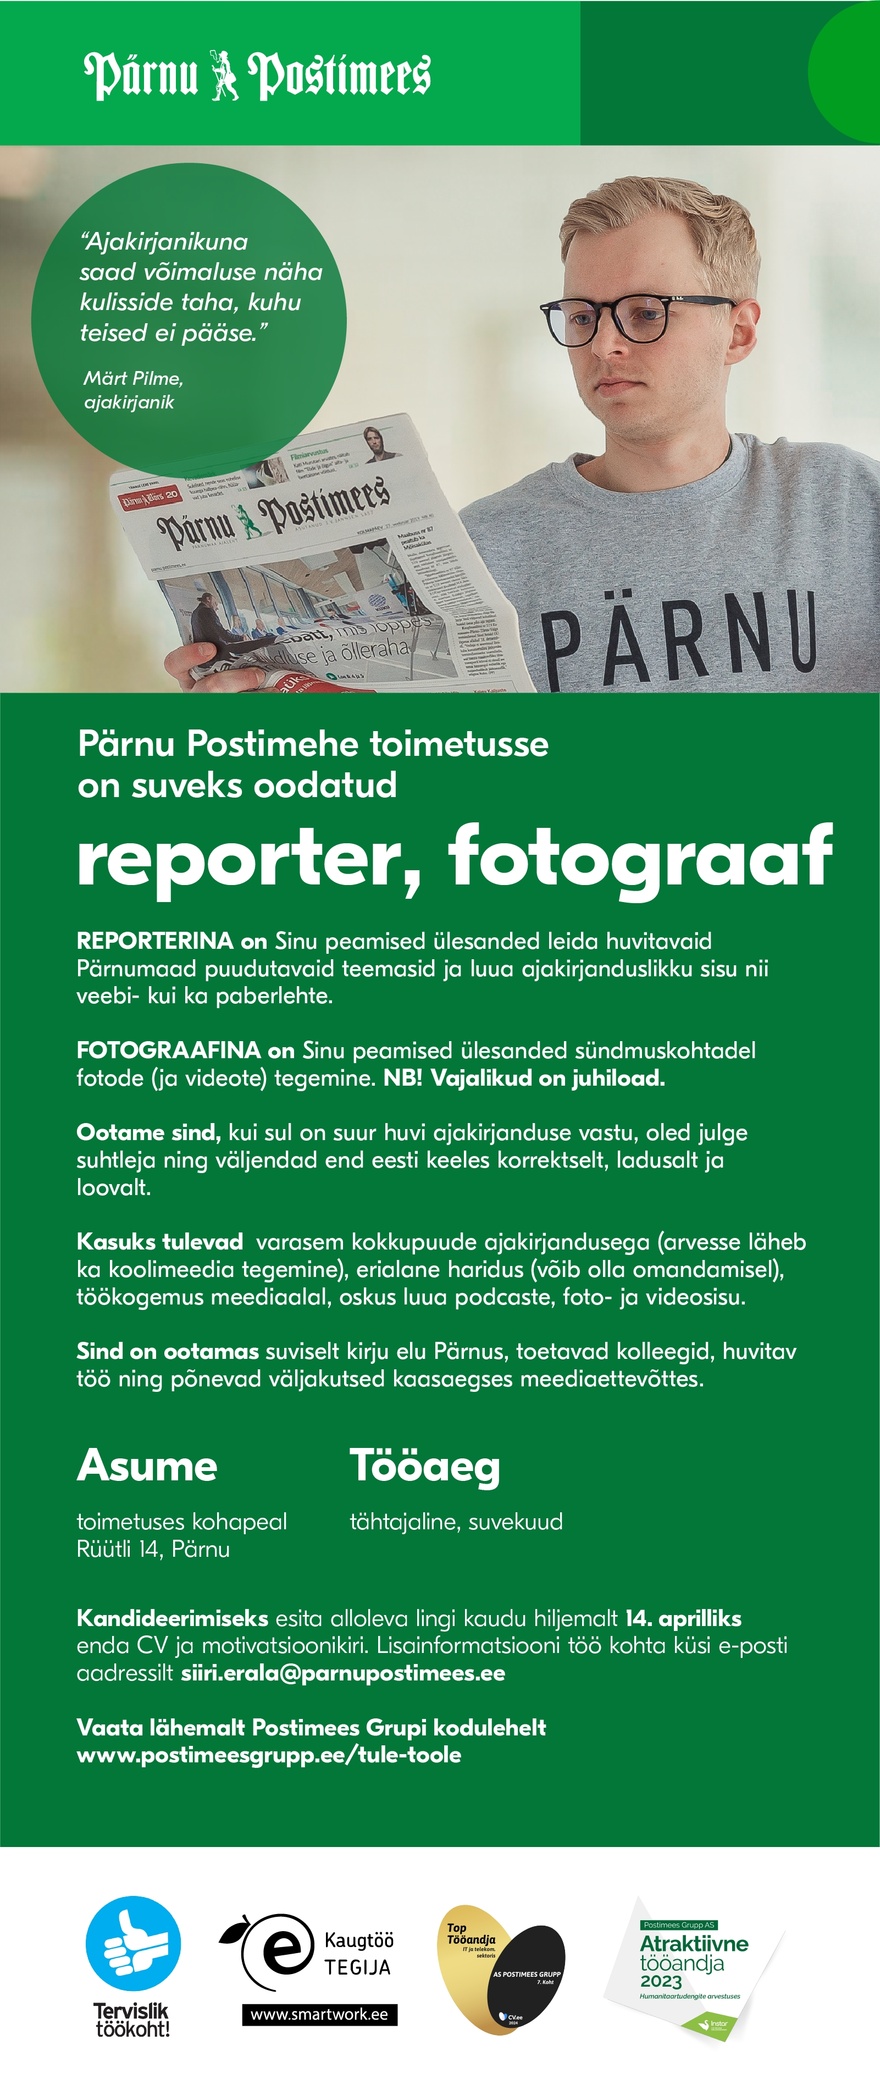 AS Postimees Grupp Pärnu Postimehe reporter ja fotograaf (tähtajaline, suvekuud)